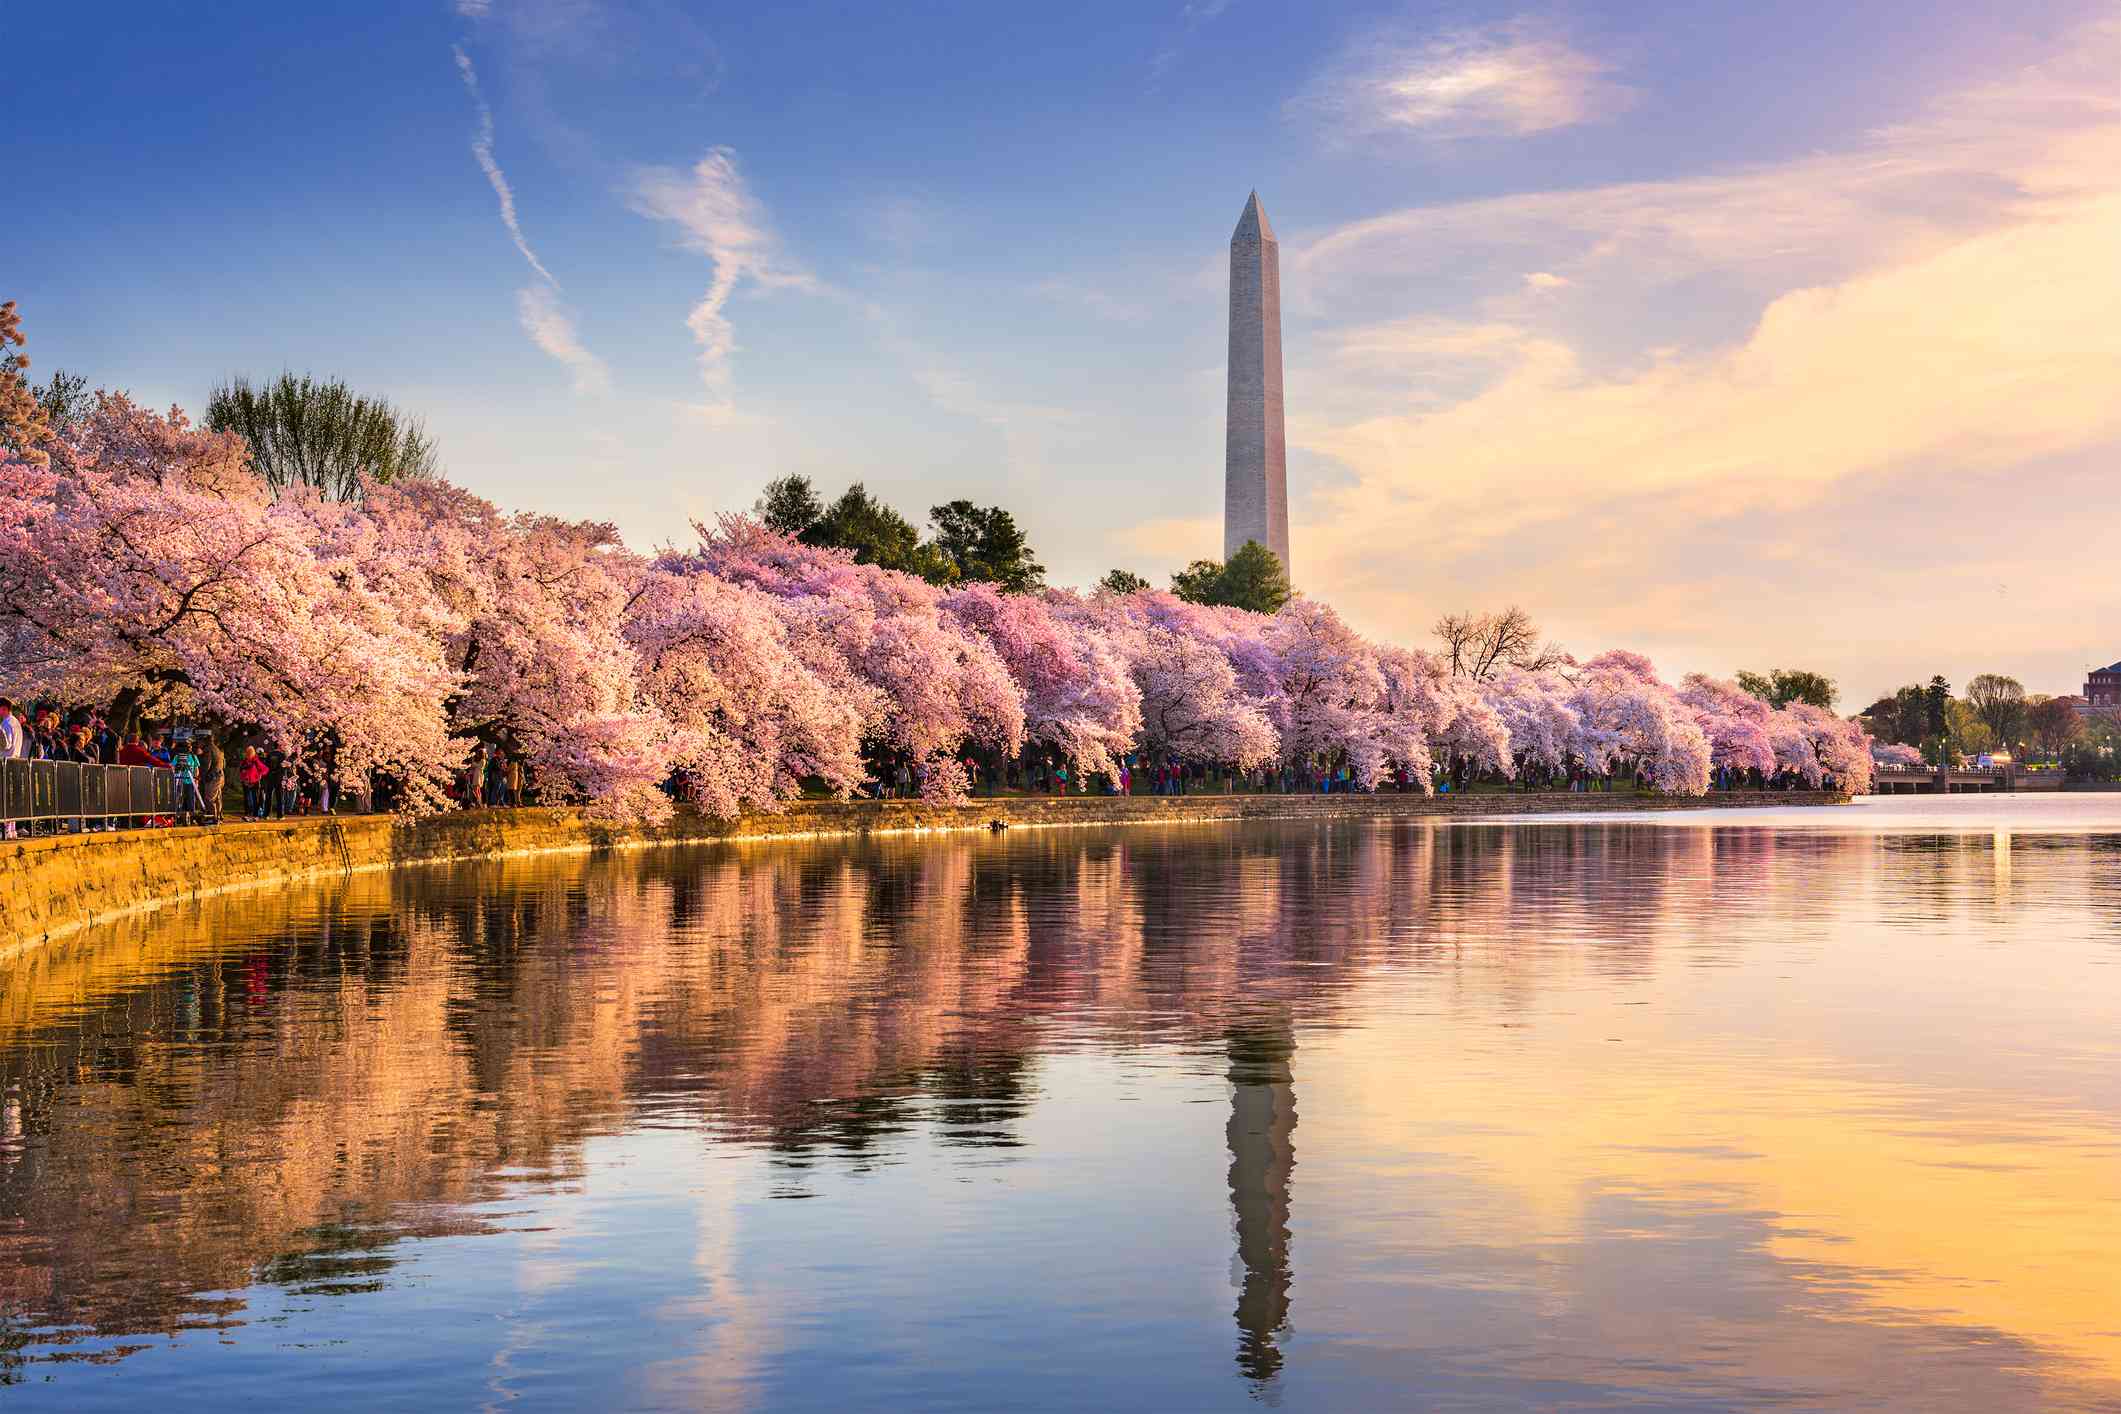 Cerezos en flor a lo largo del agua con el Monumento a Washington en la distancia bajo un cielo azul